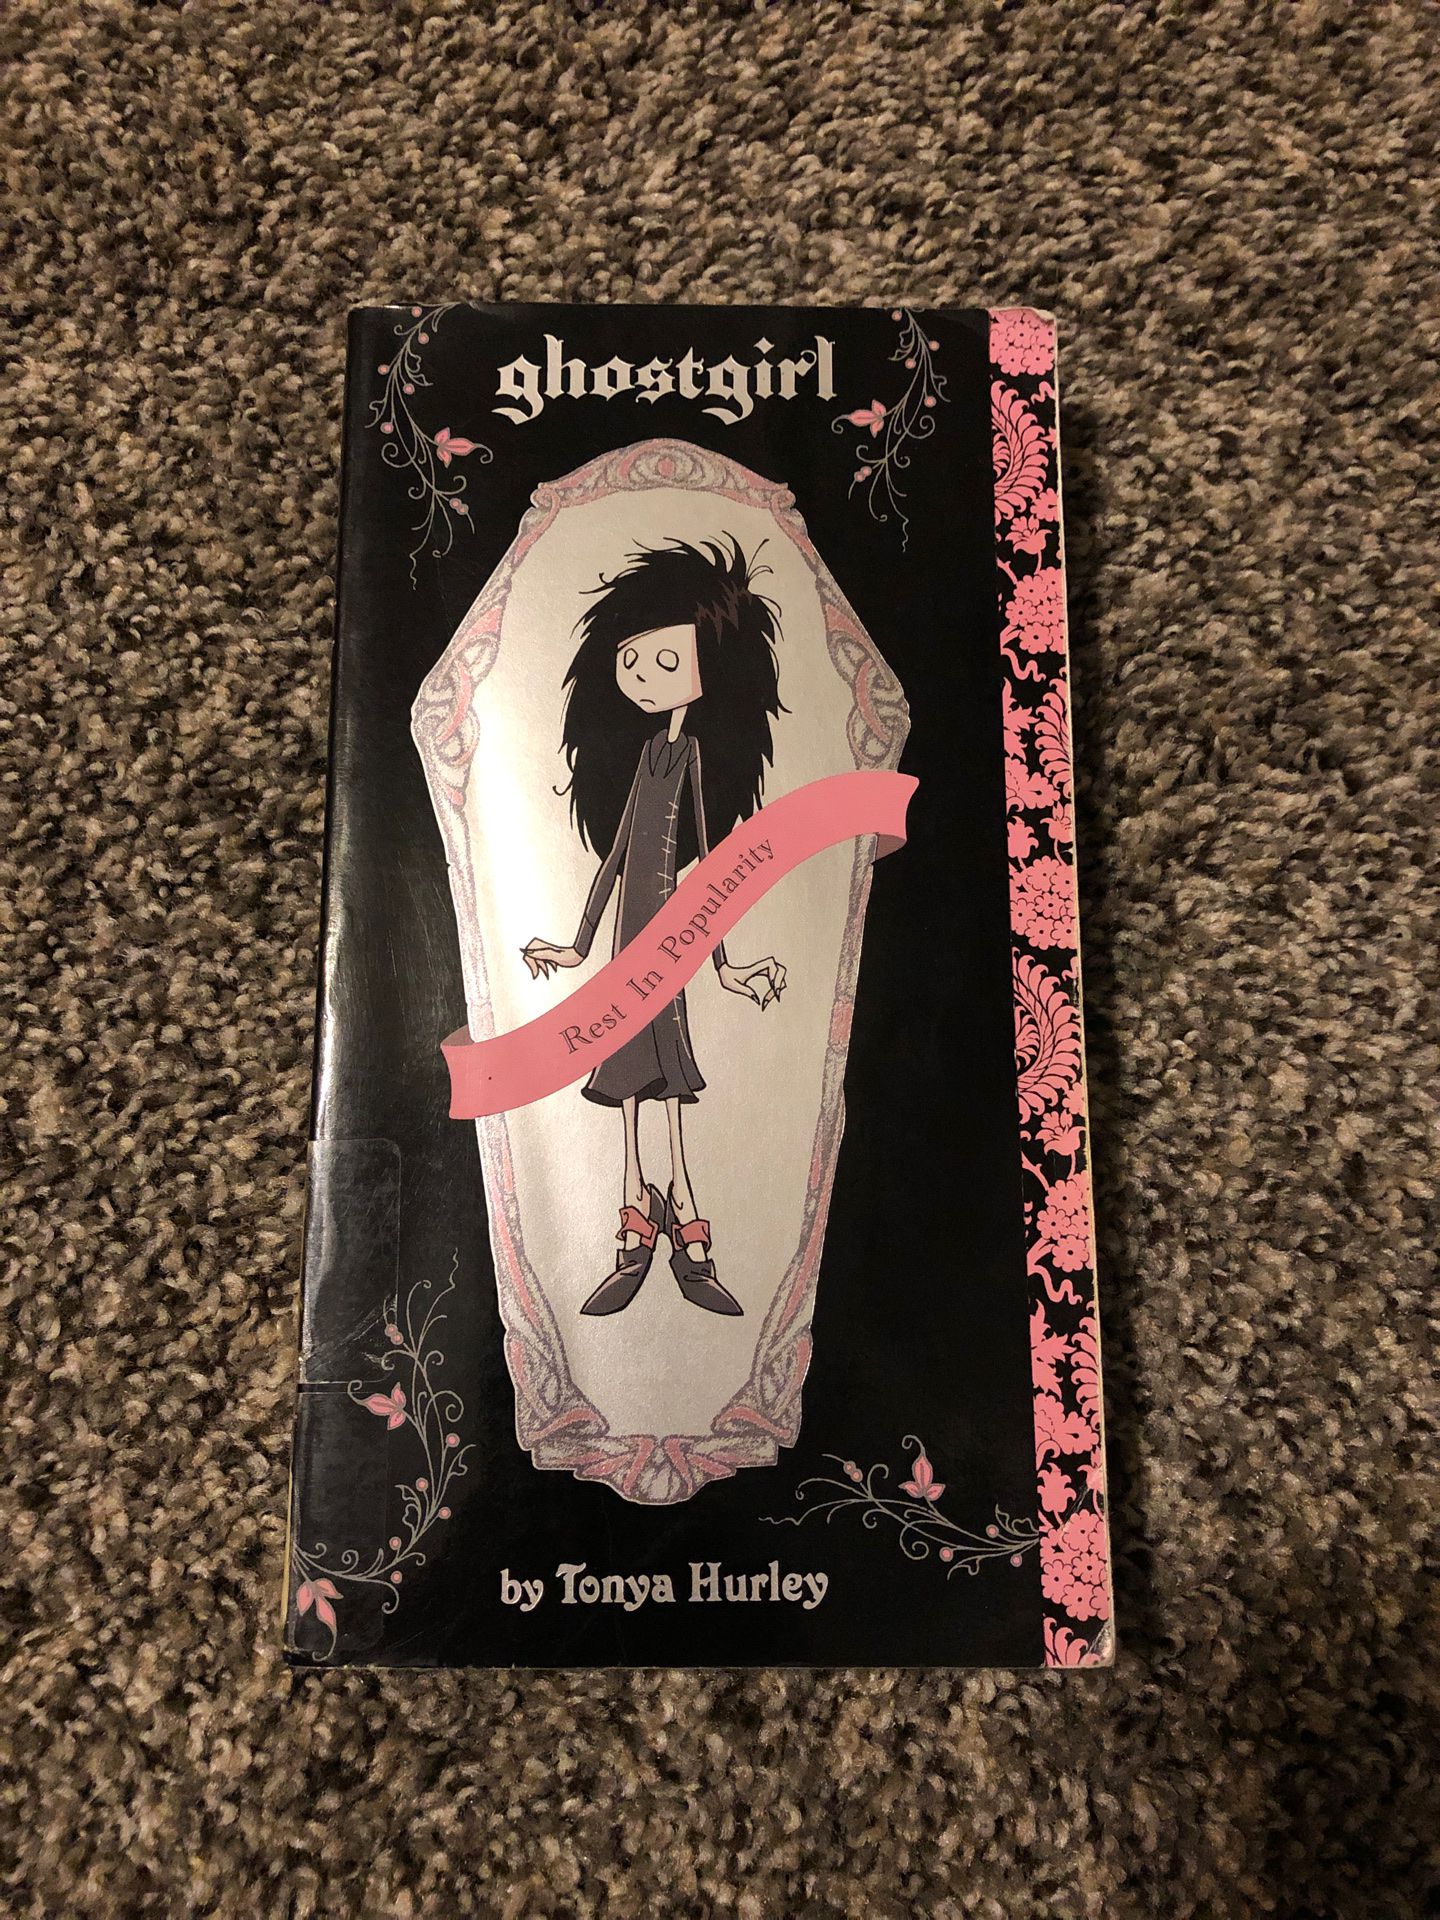 Ghostgirl by Tonya Hurley